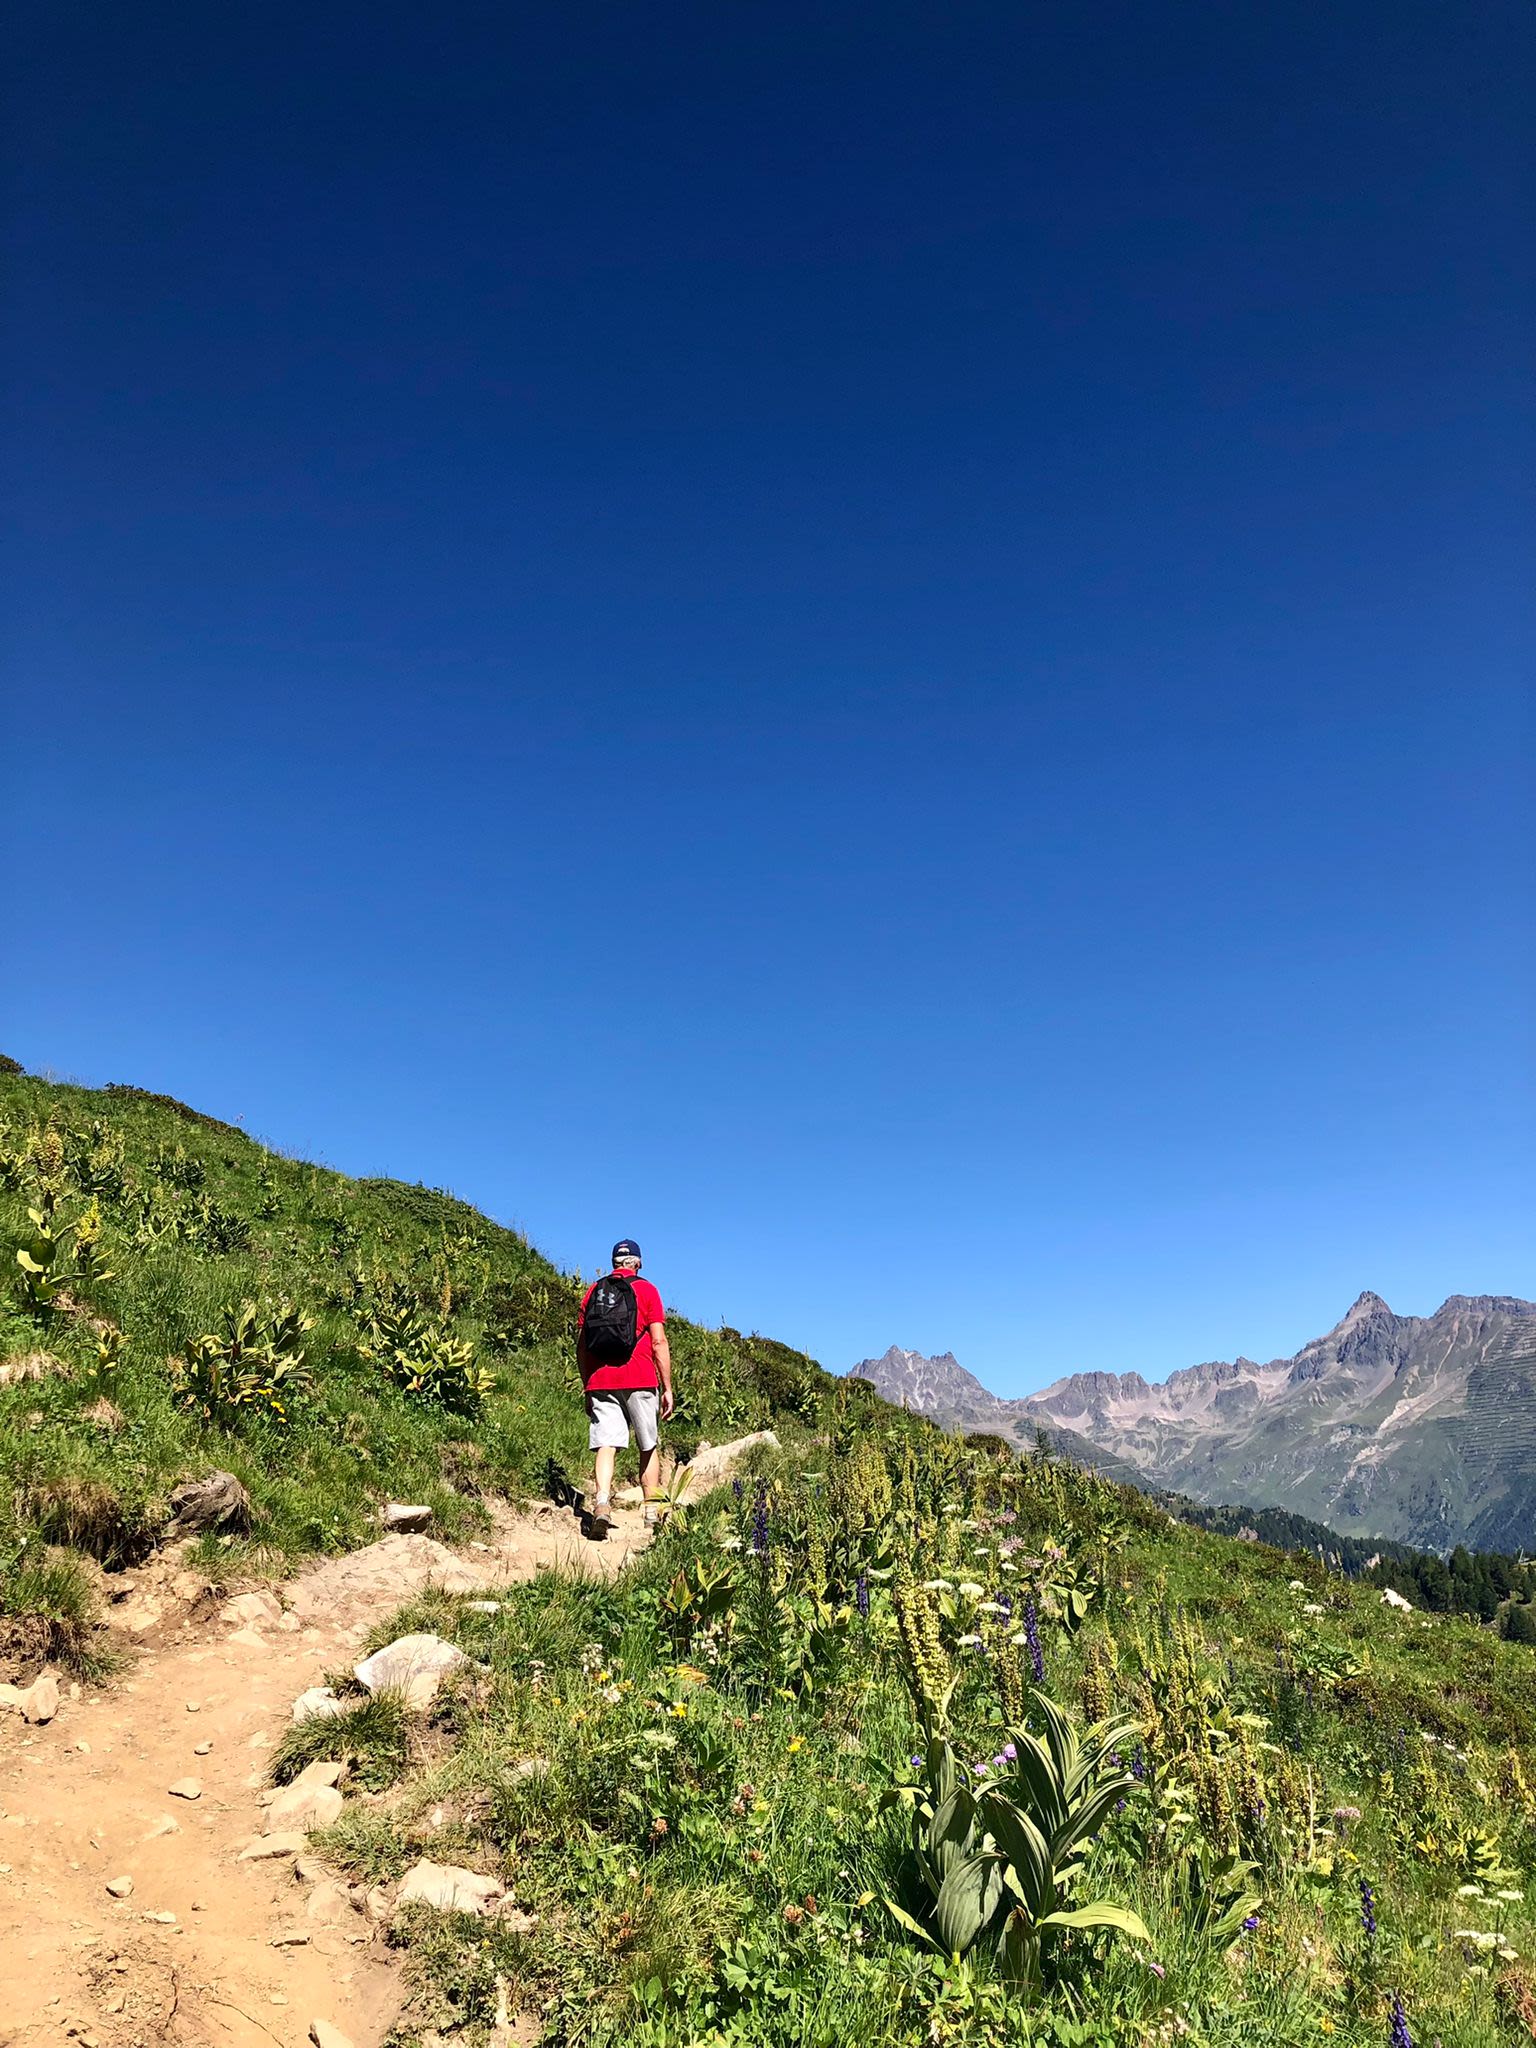 Wandelaar in Ischgl naar Pazauner taja Berghut.
Foto: Rian van Straaten